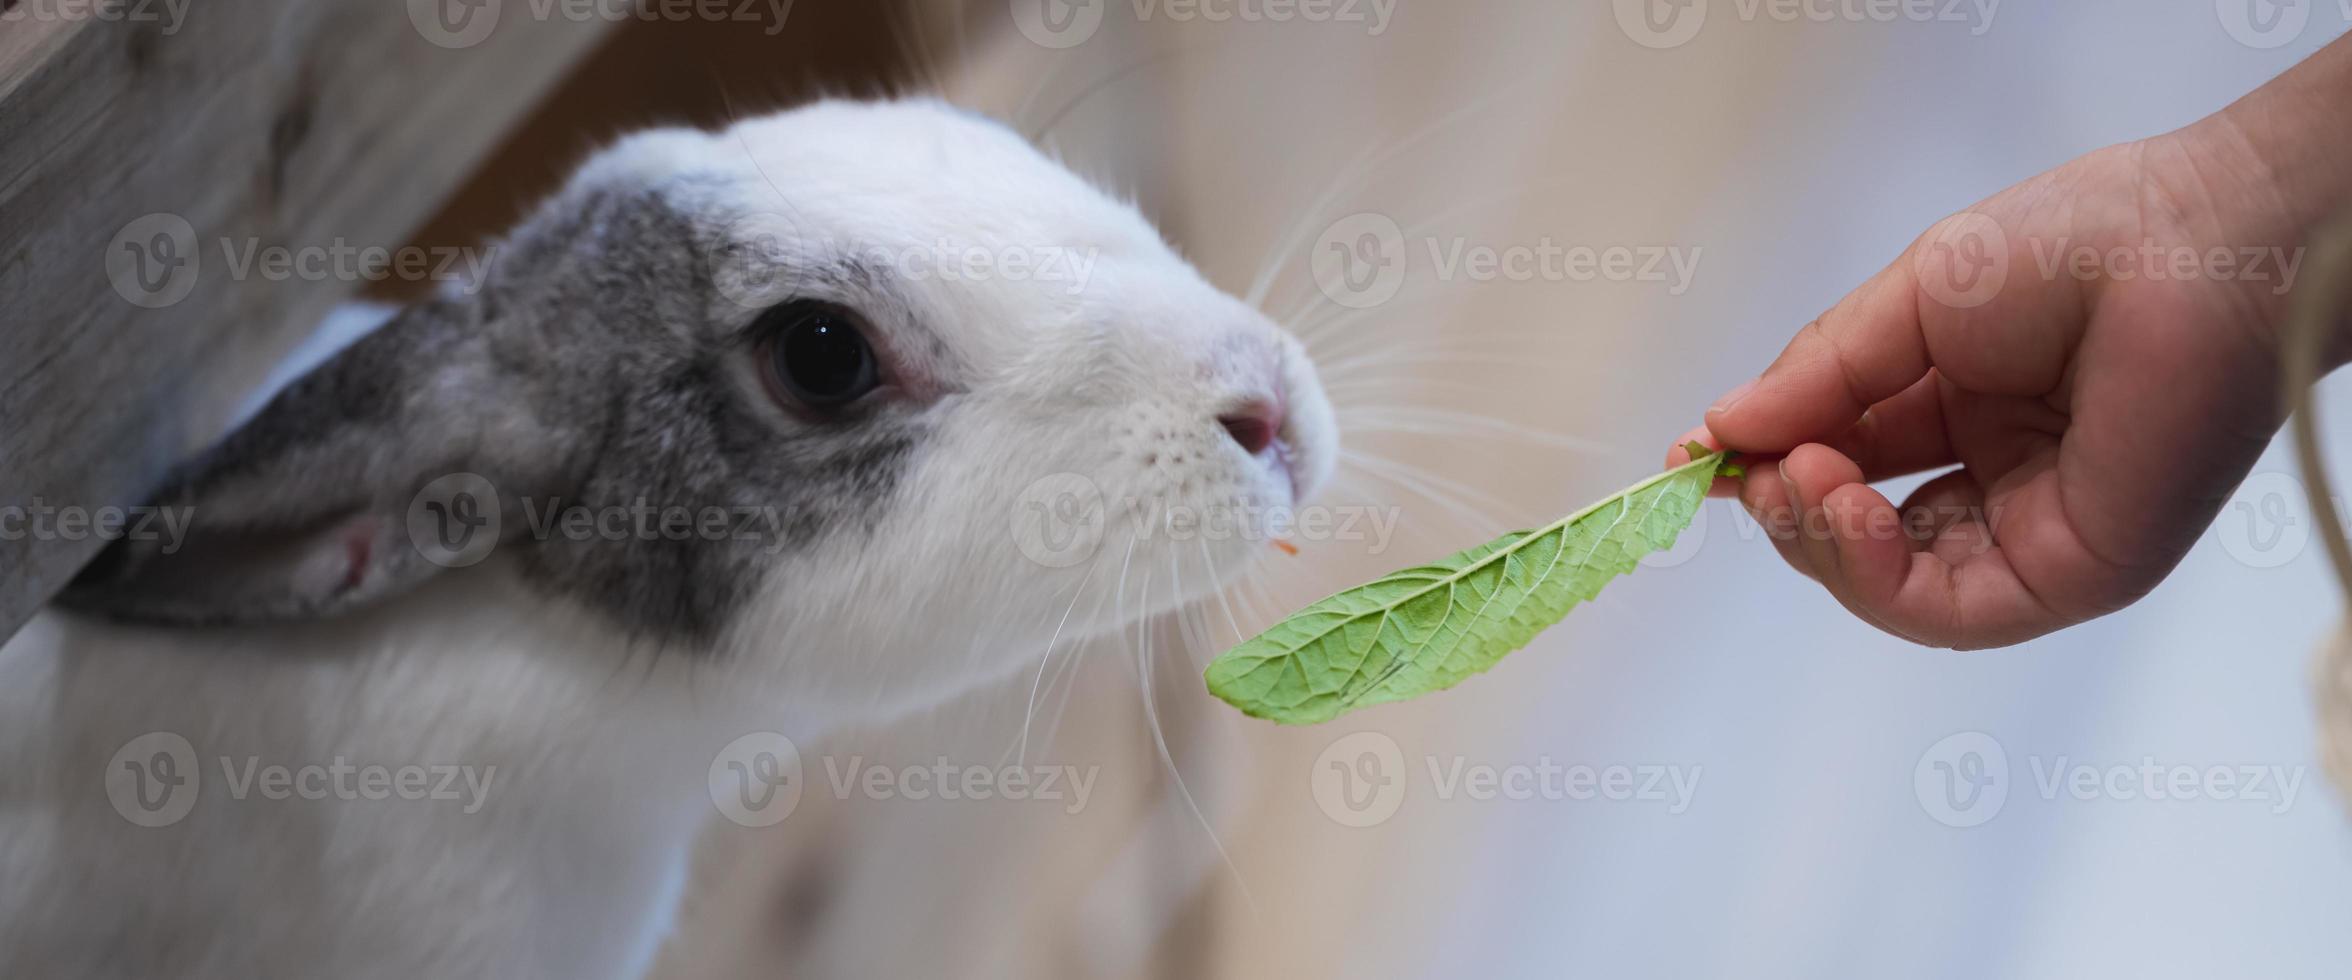 el conejito estaba olfateando las hojas de albahaca dulce que la mano humana le estaba dando de comer. las mascotas están en jaulas. foto